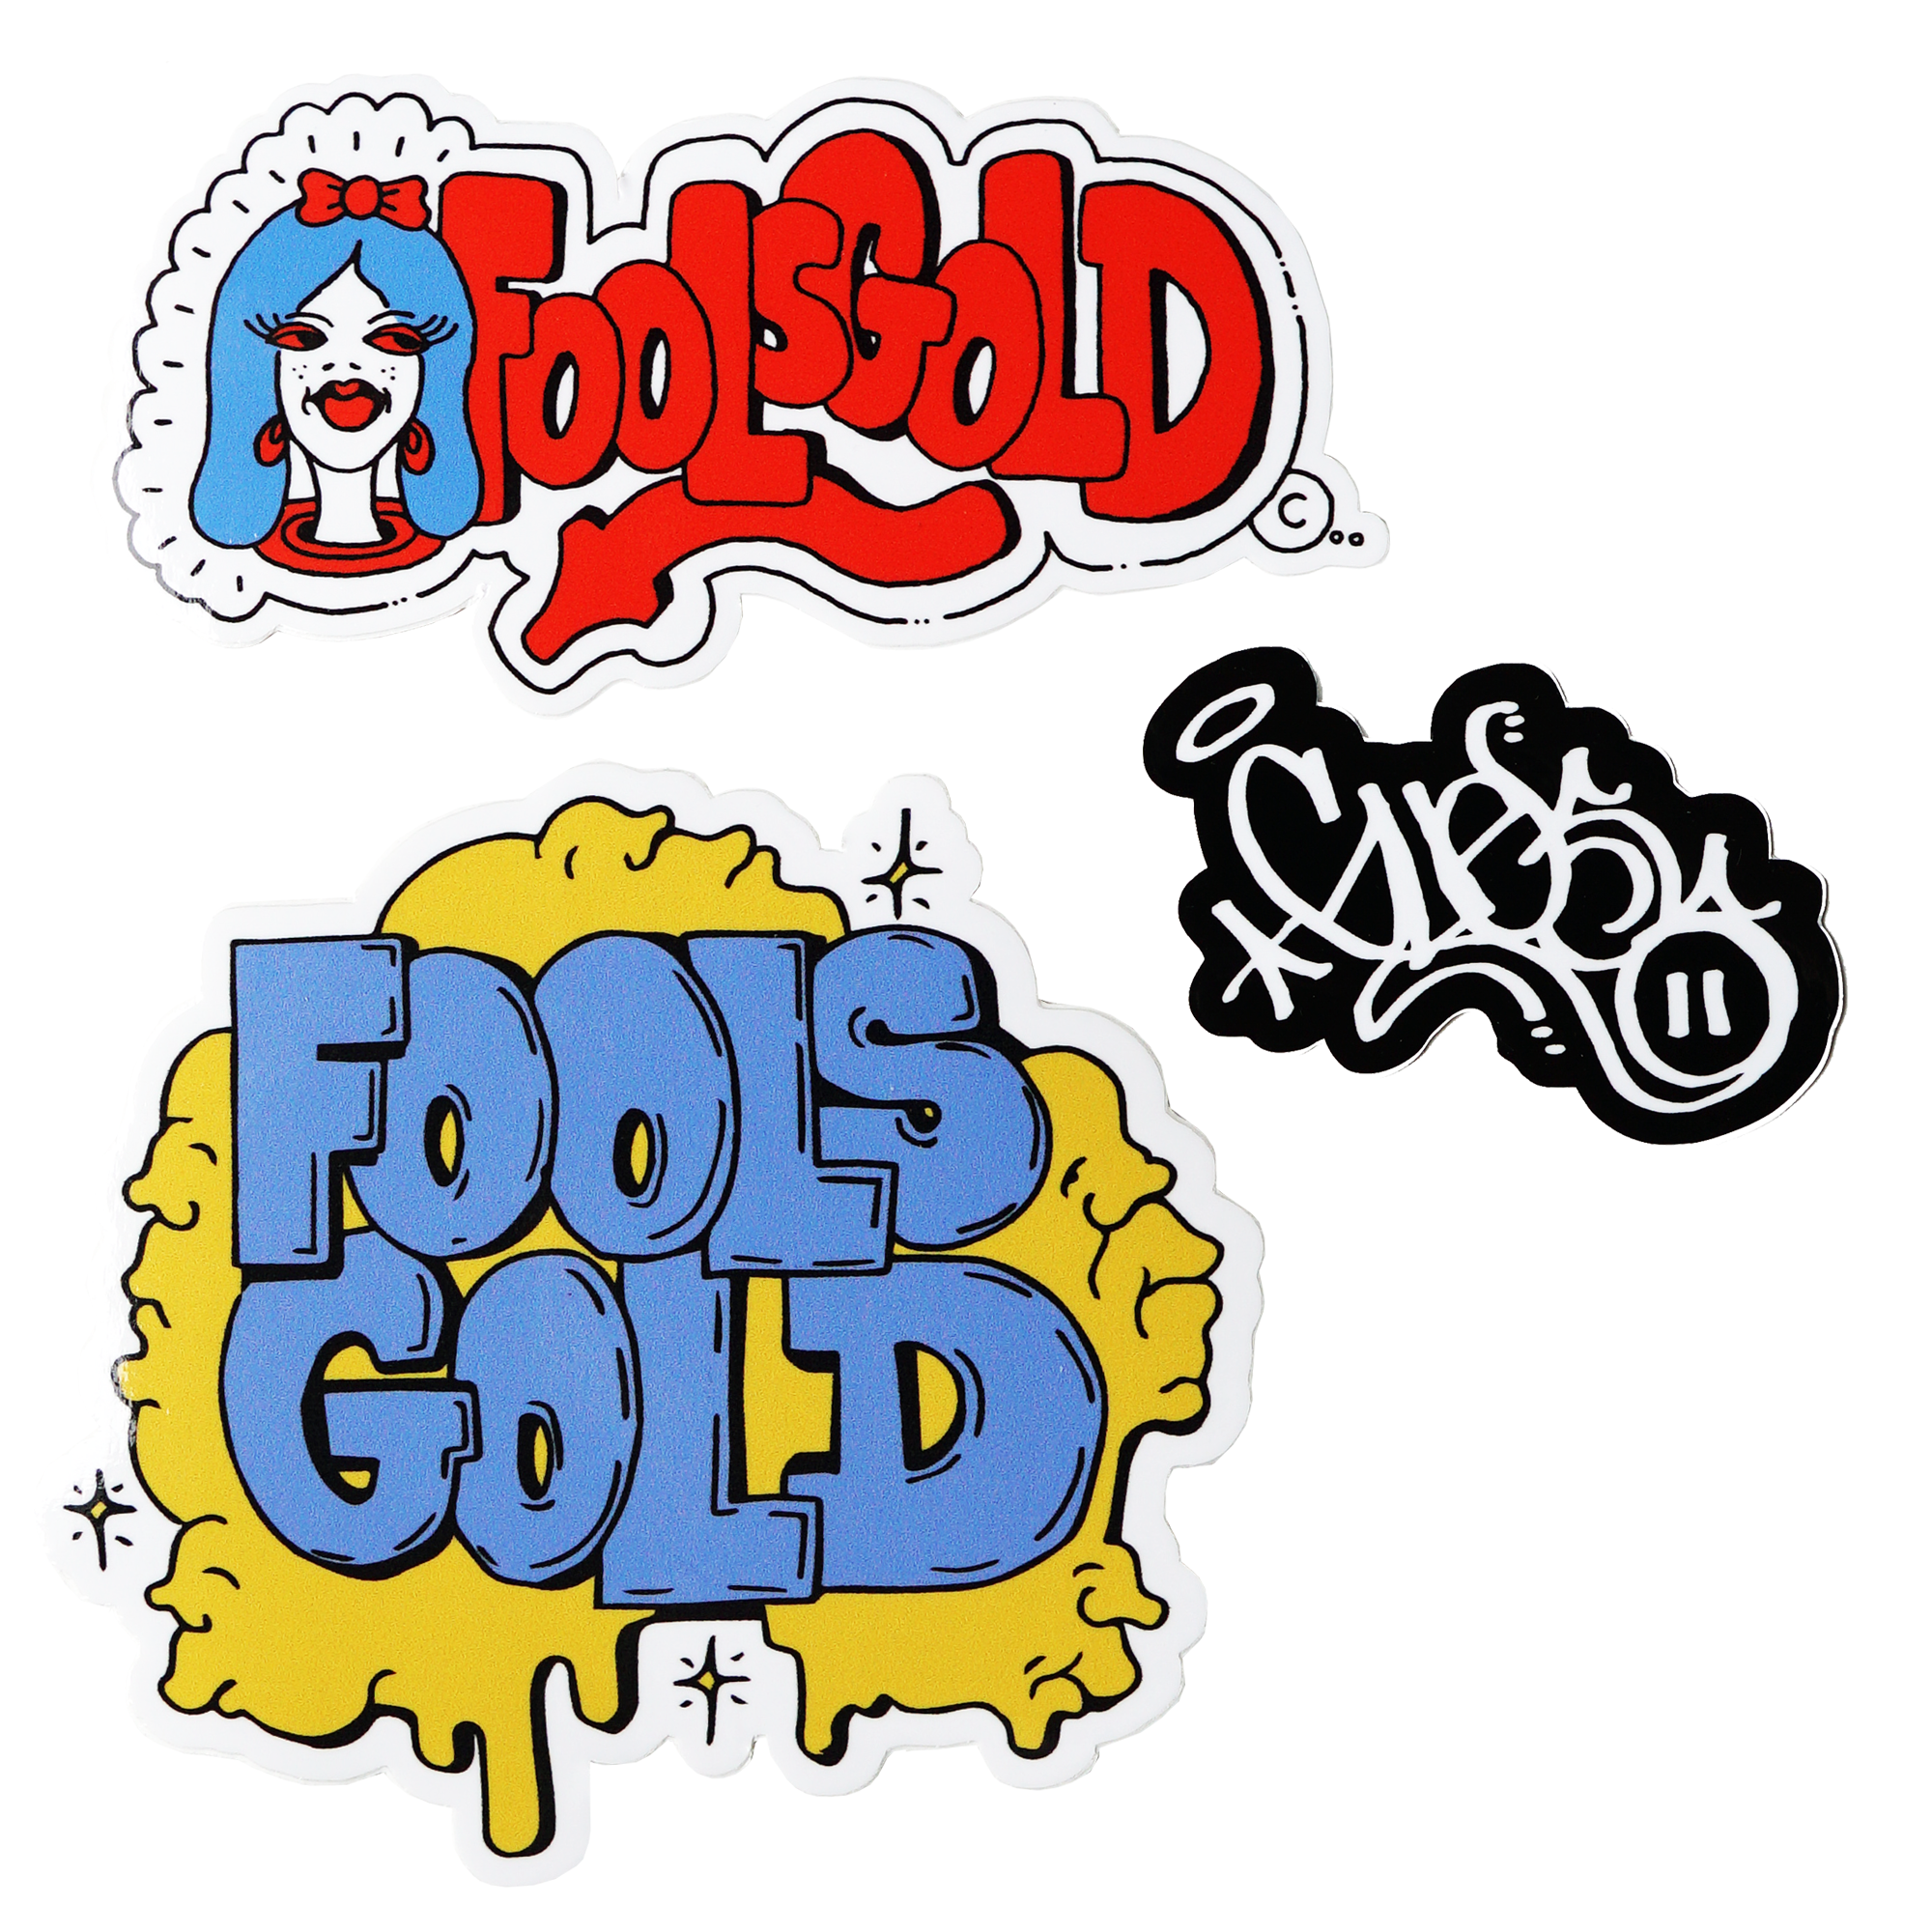 Fool’s Gold x GUESS “Artist Series” Sticker Pack